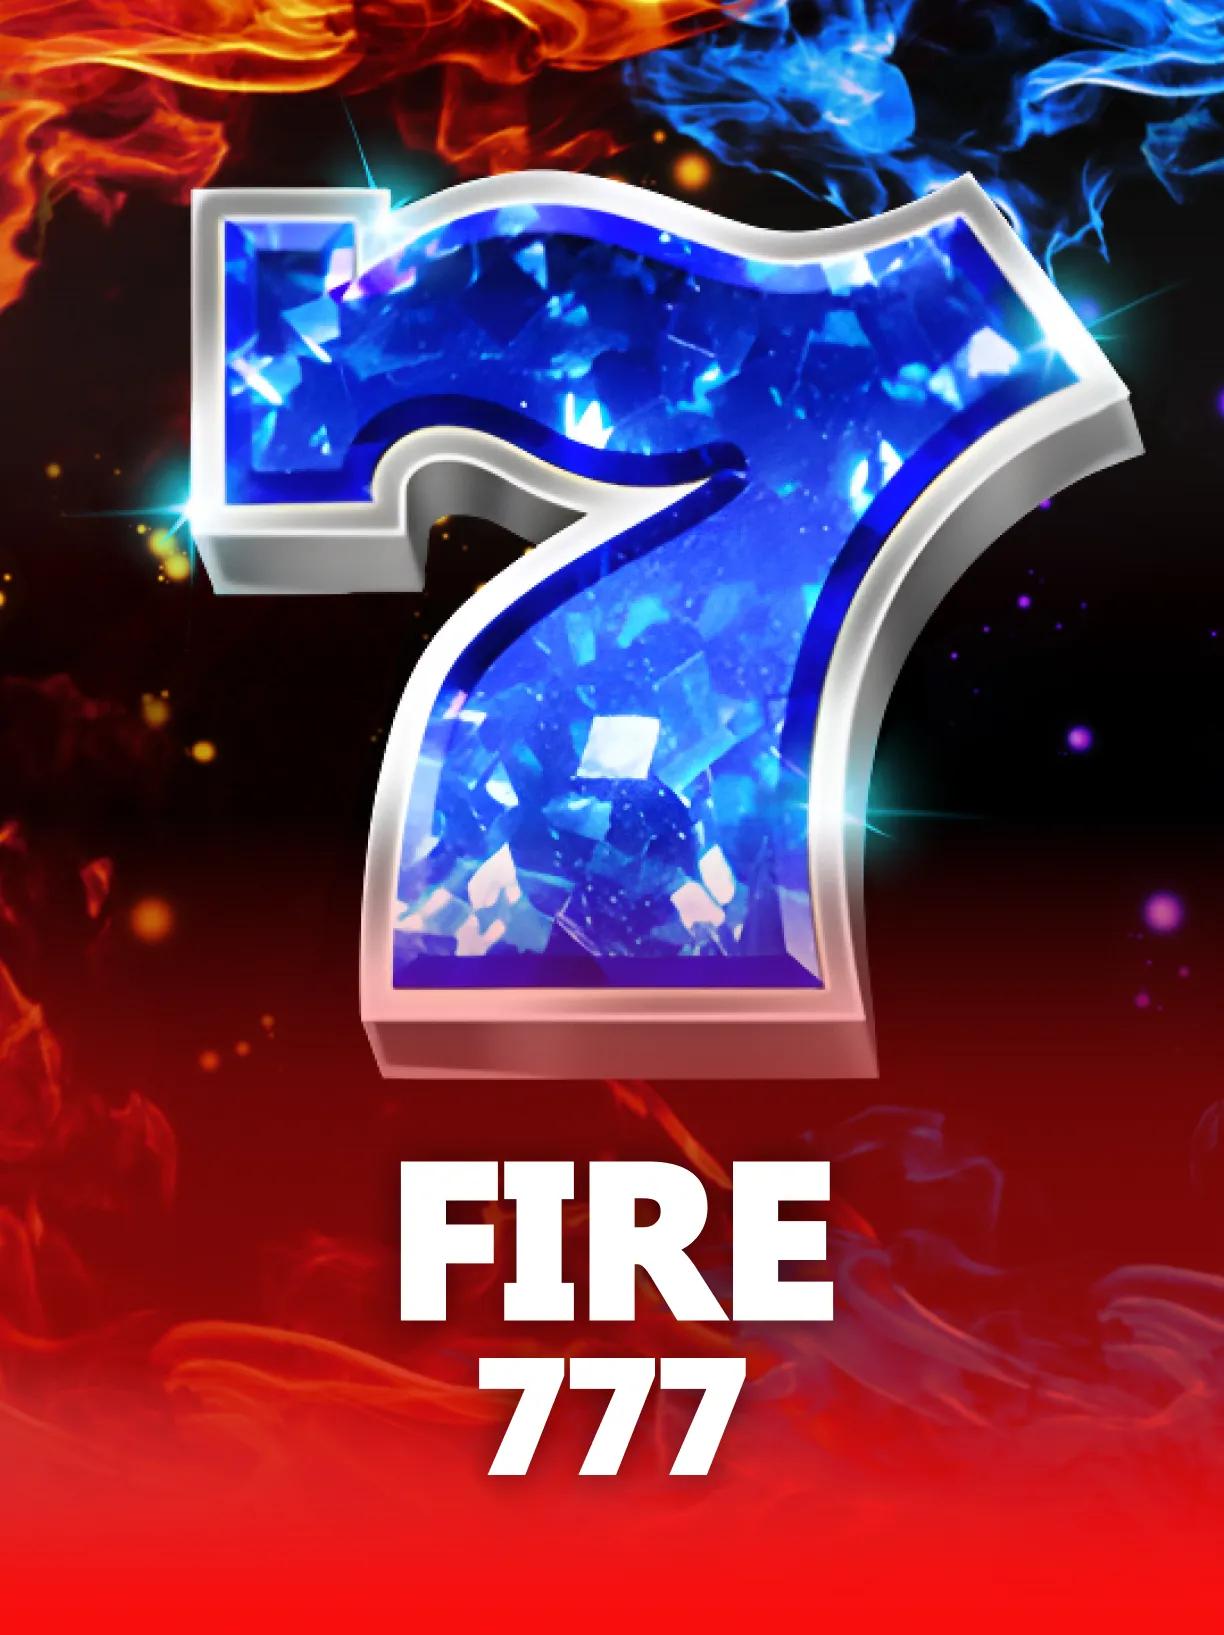 Fire 777